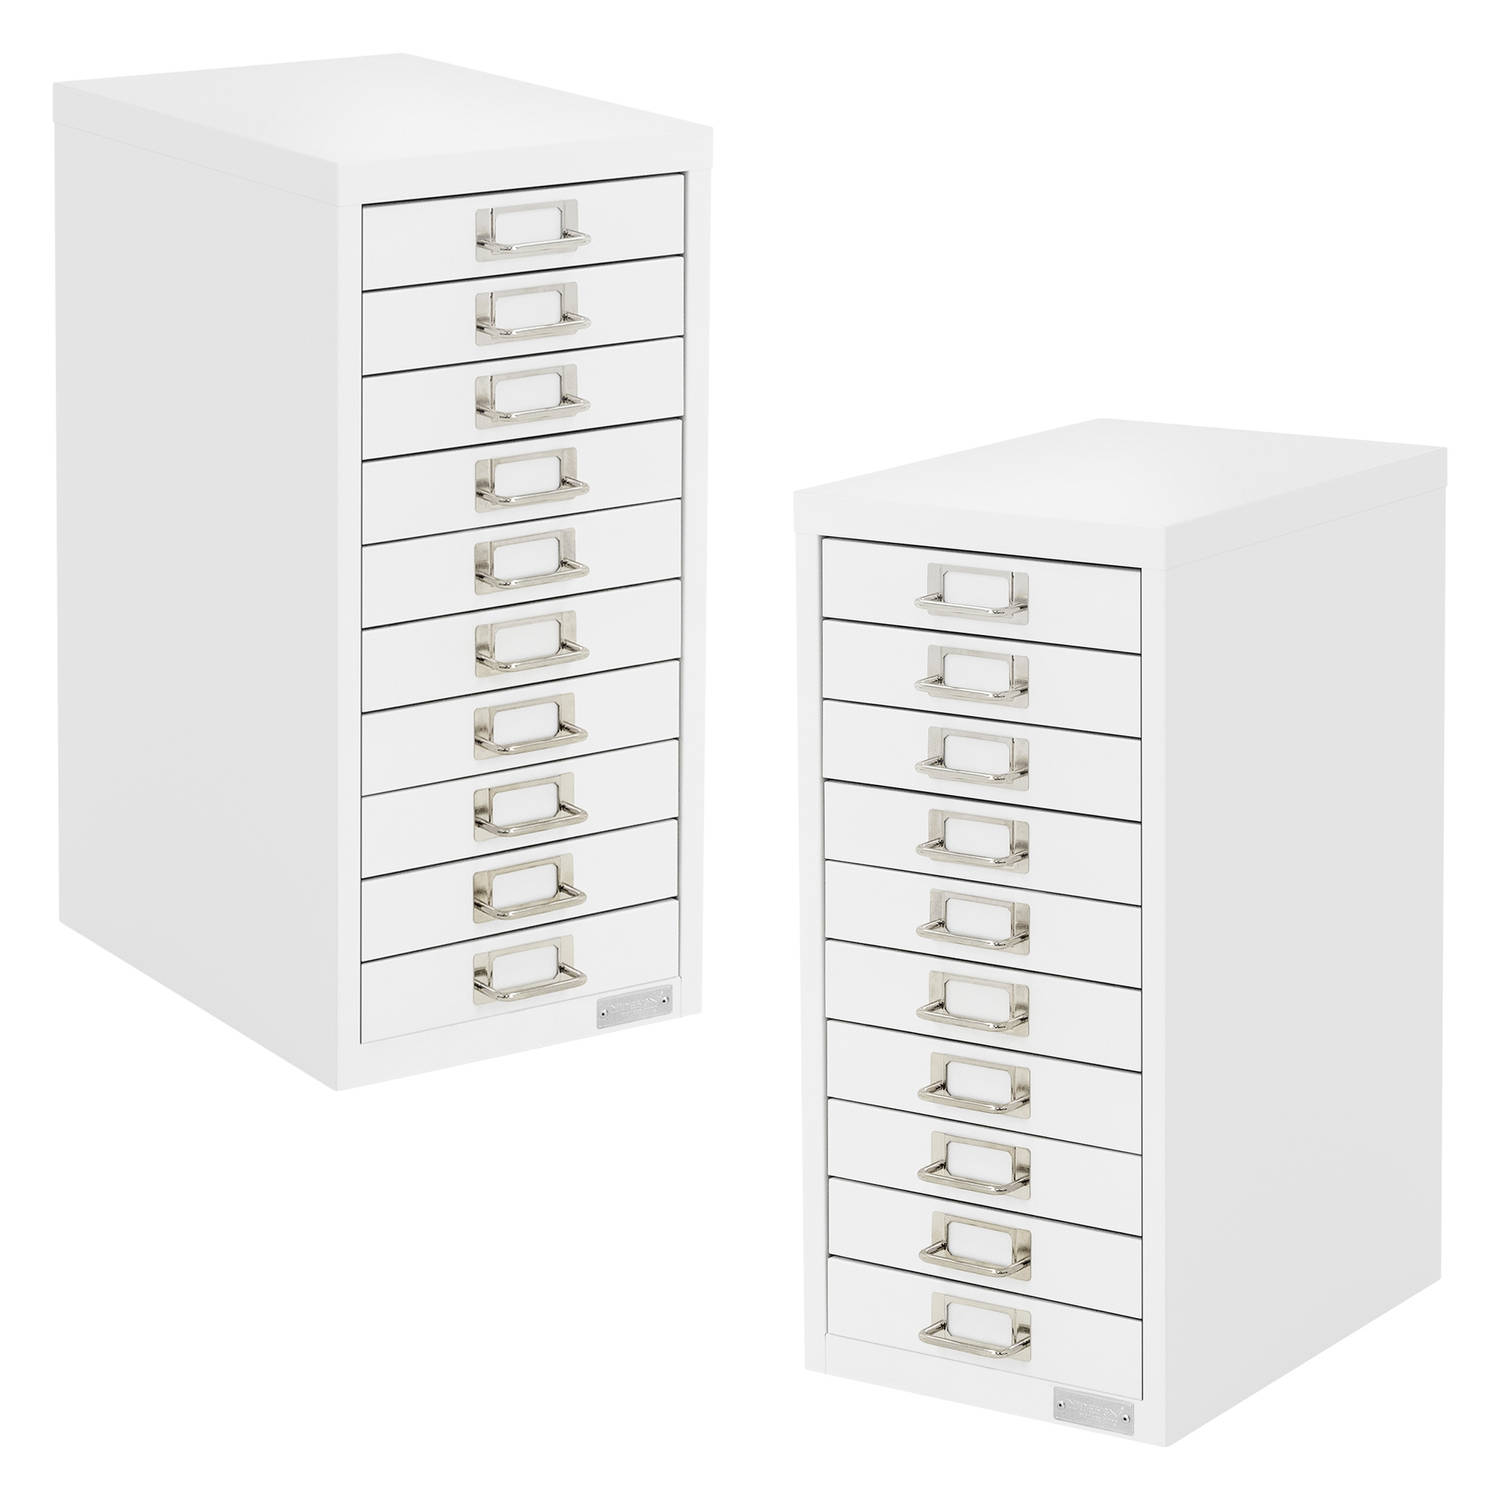 ML-Design set van 2 archiefkasten met 10 laden 28x38x60cm, wit, metalen ladekast DIN A4, kantoorkast